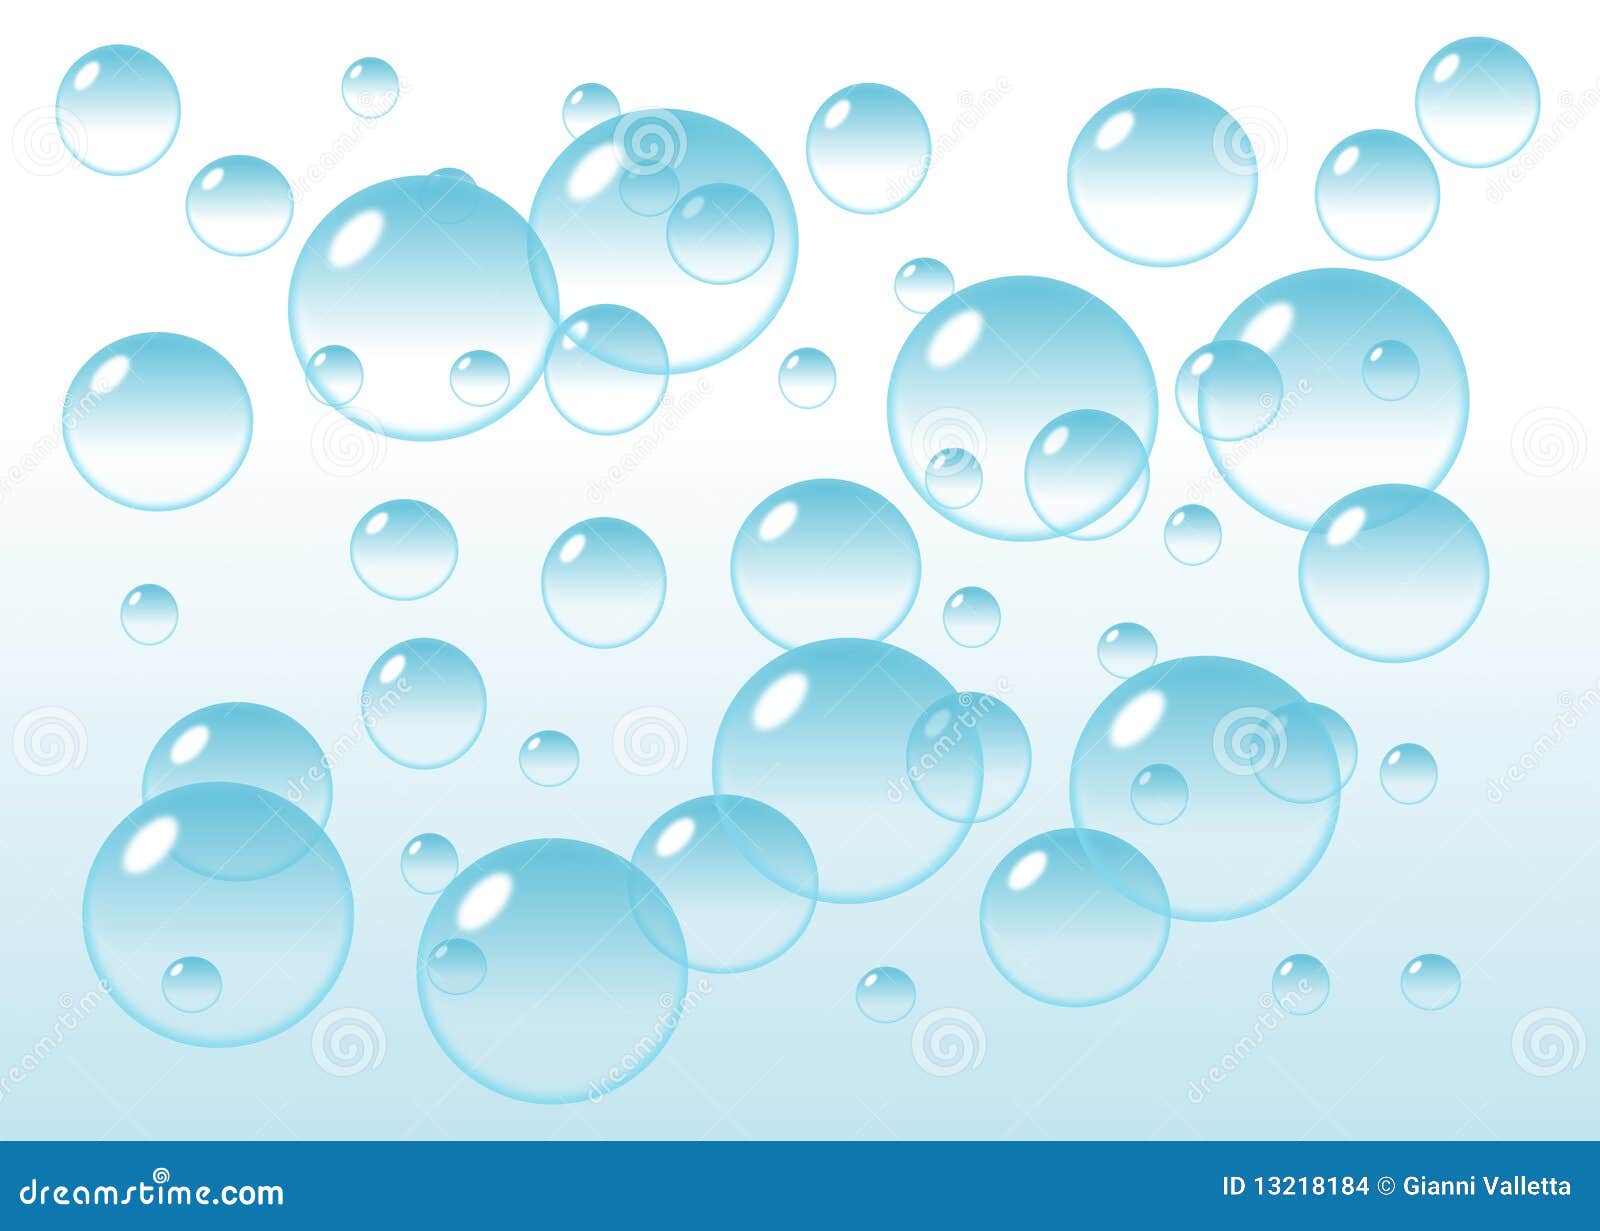 clipart bubbles background - photo #30